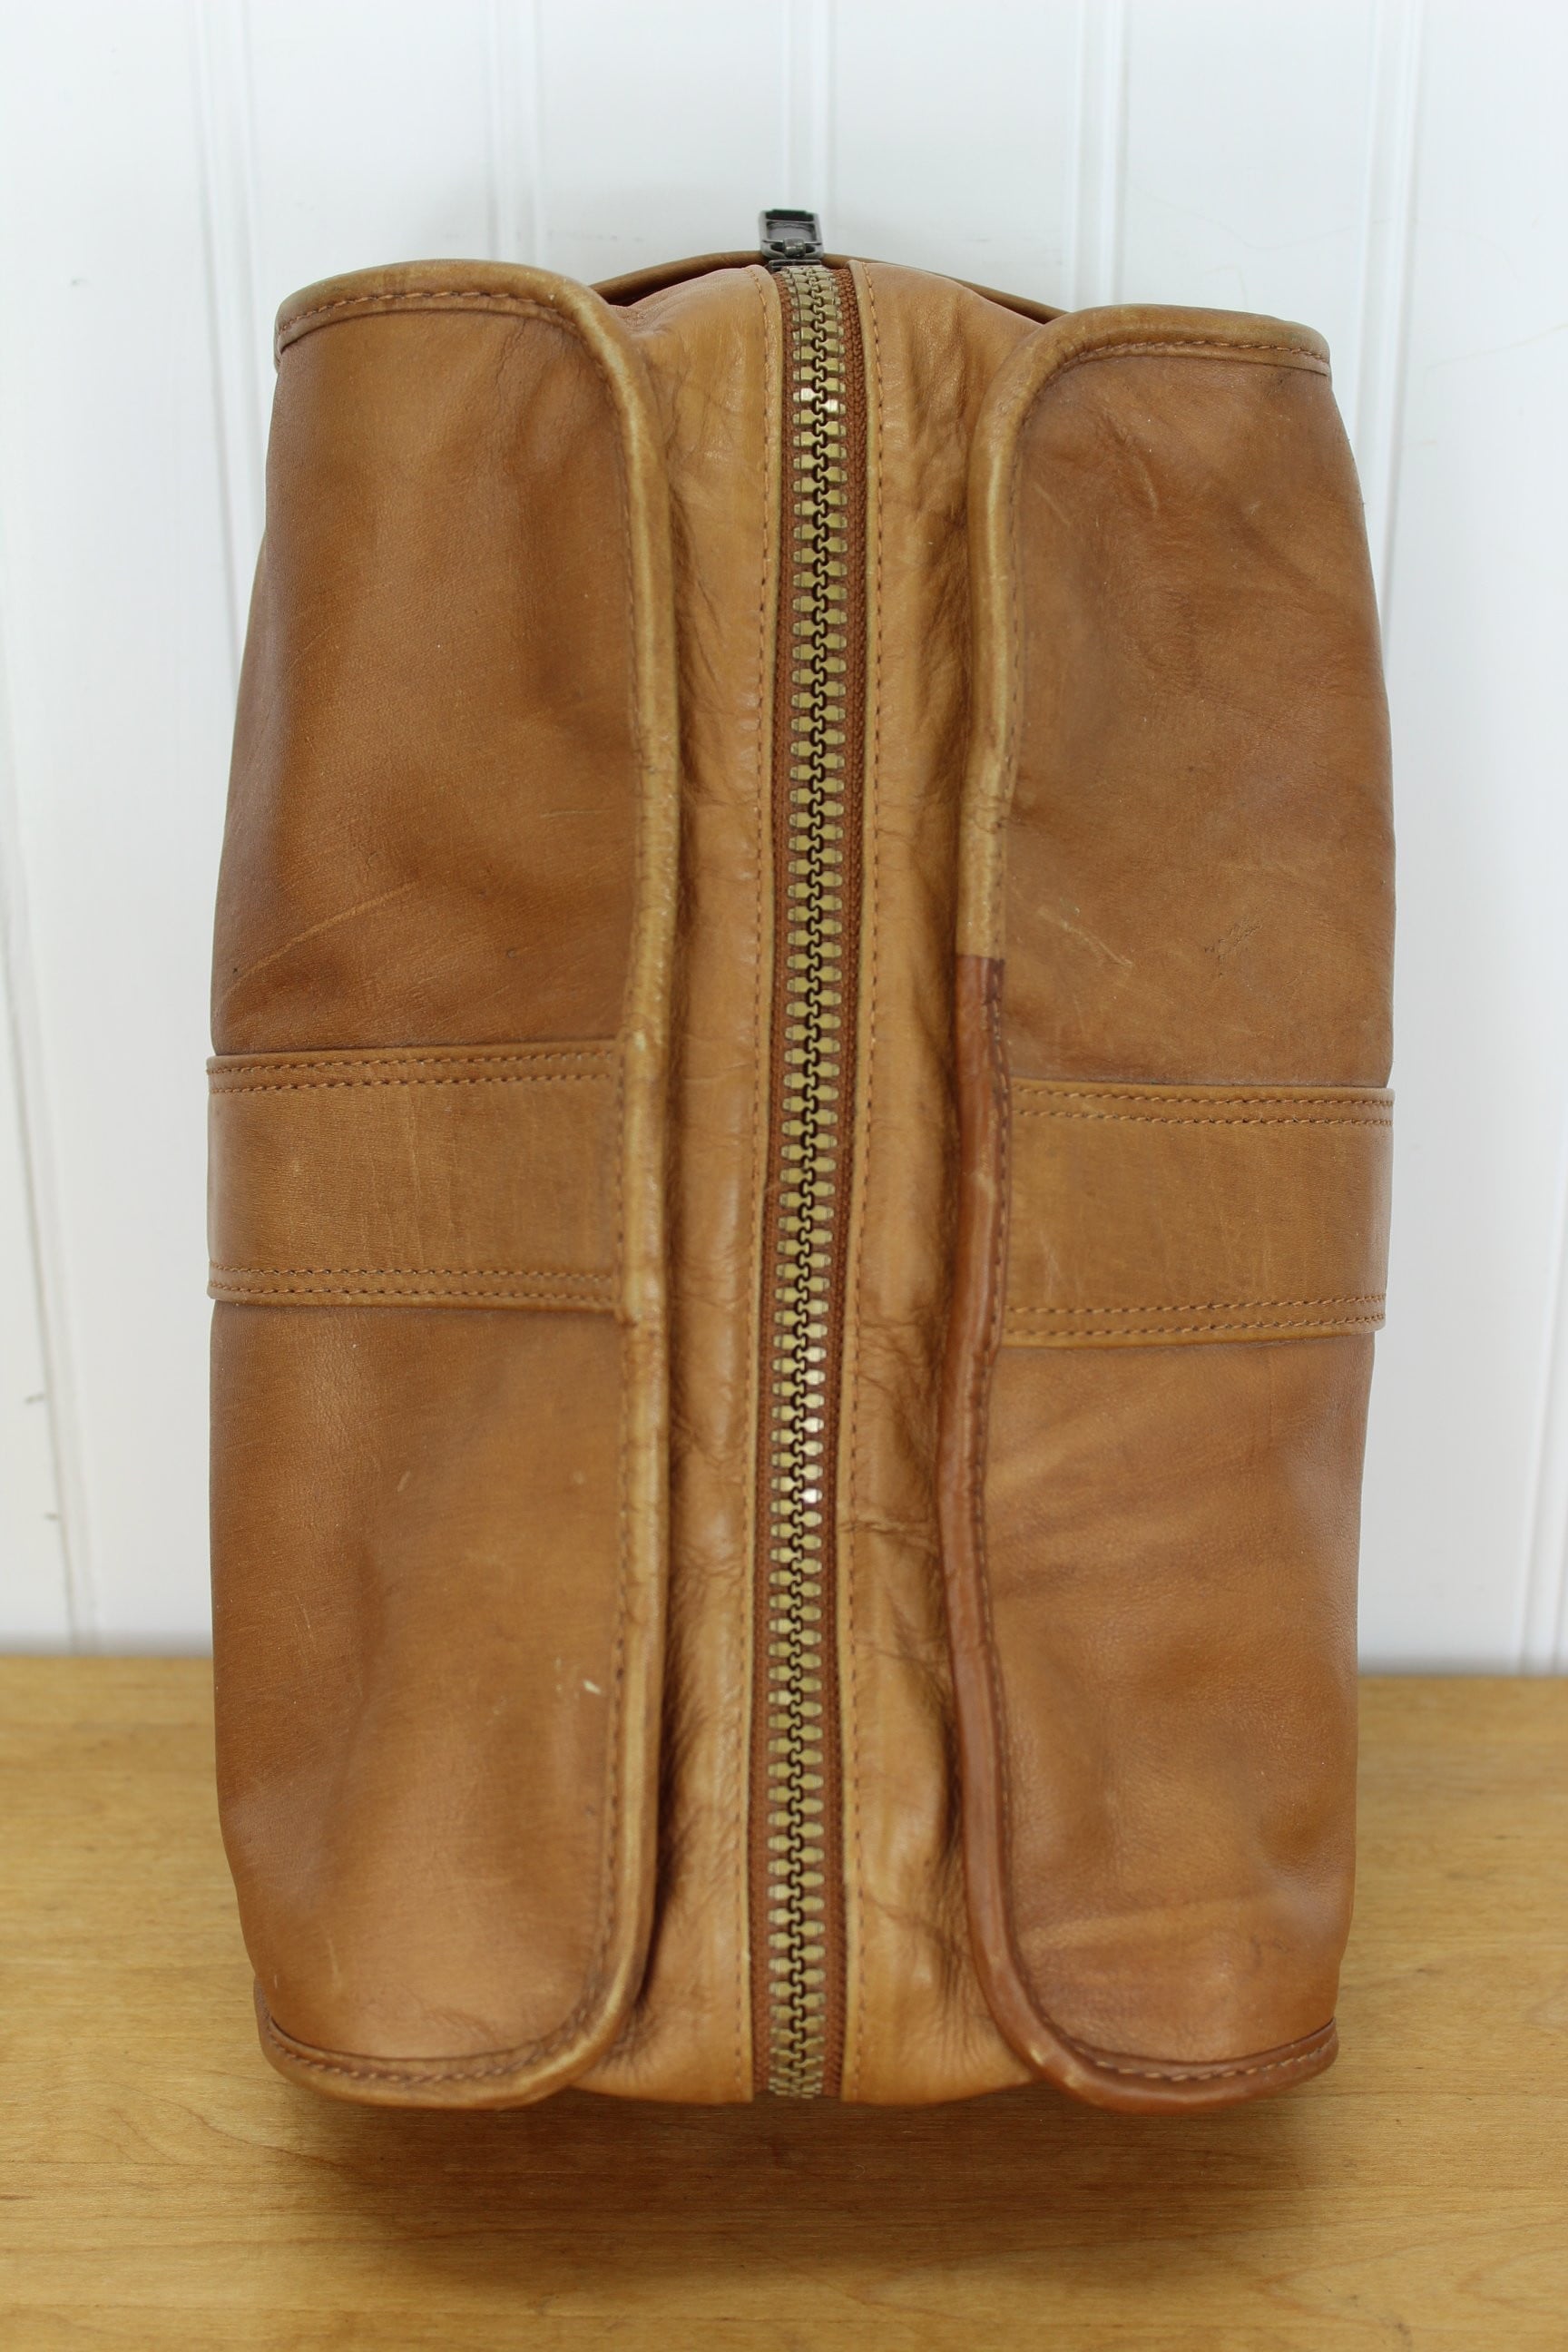 Dakota Tumi Leather Toiletry Kit - Vintage Collectible Gift - Estate Item - Large Size